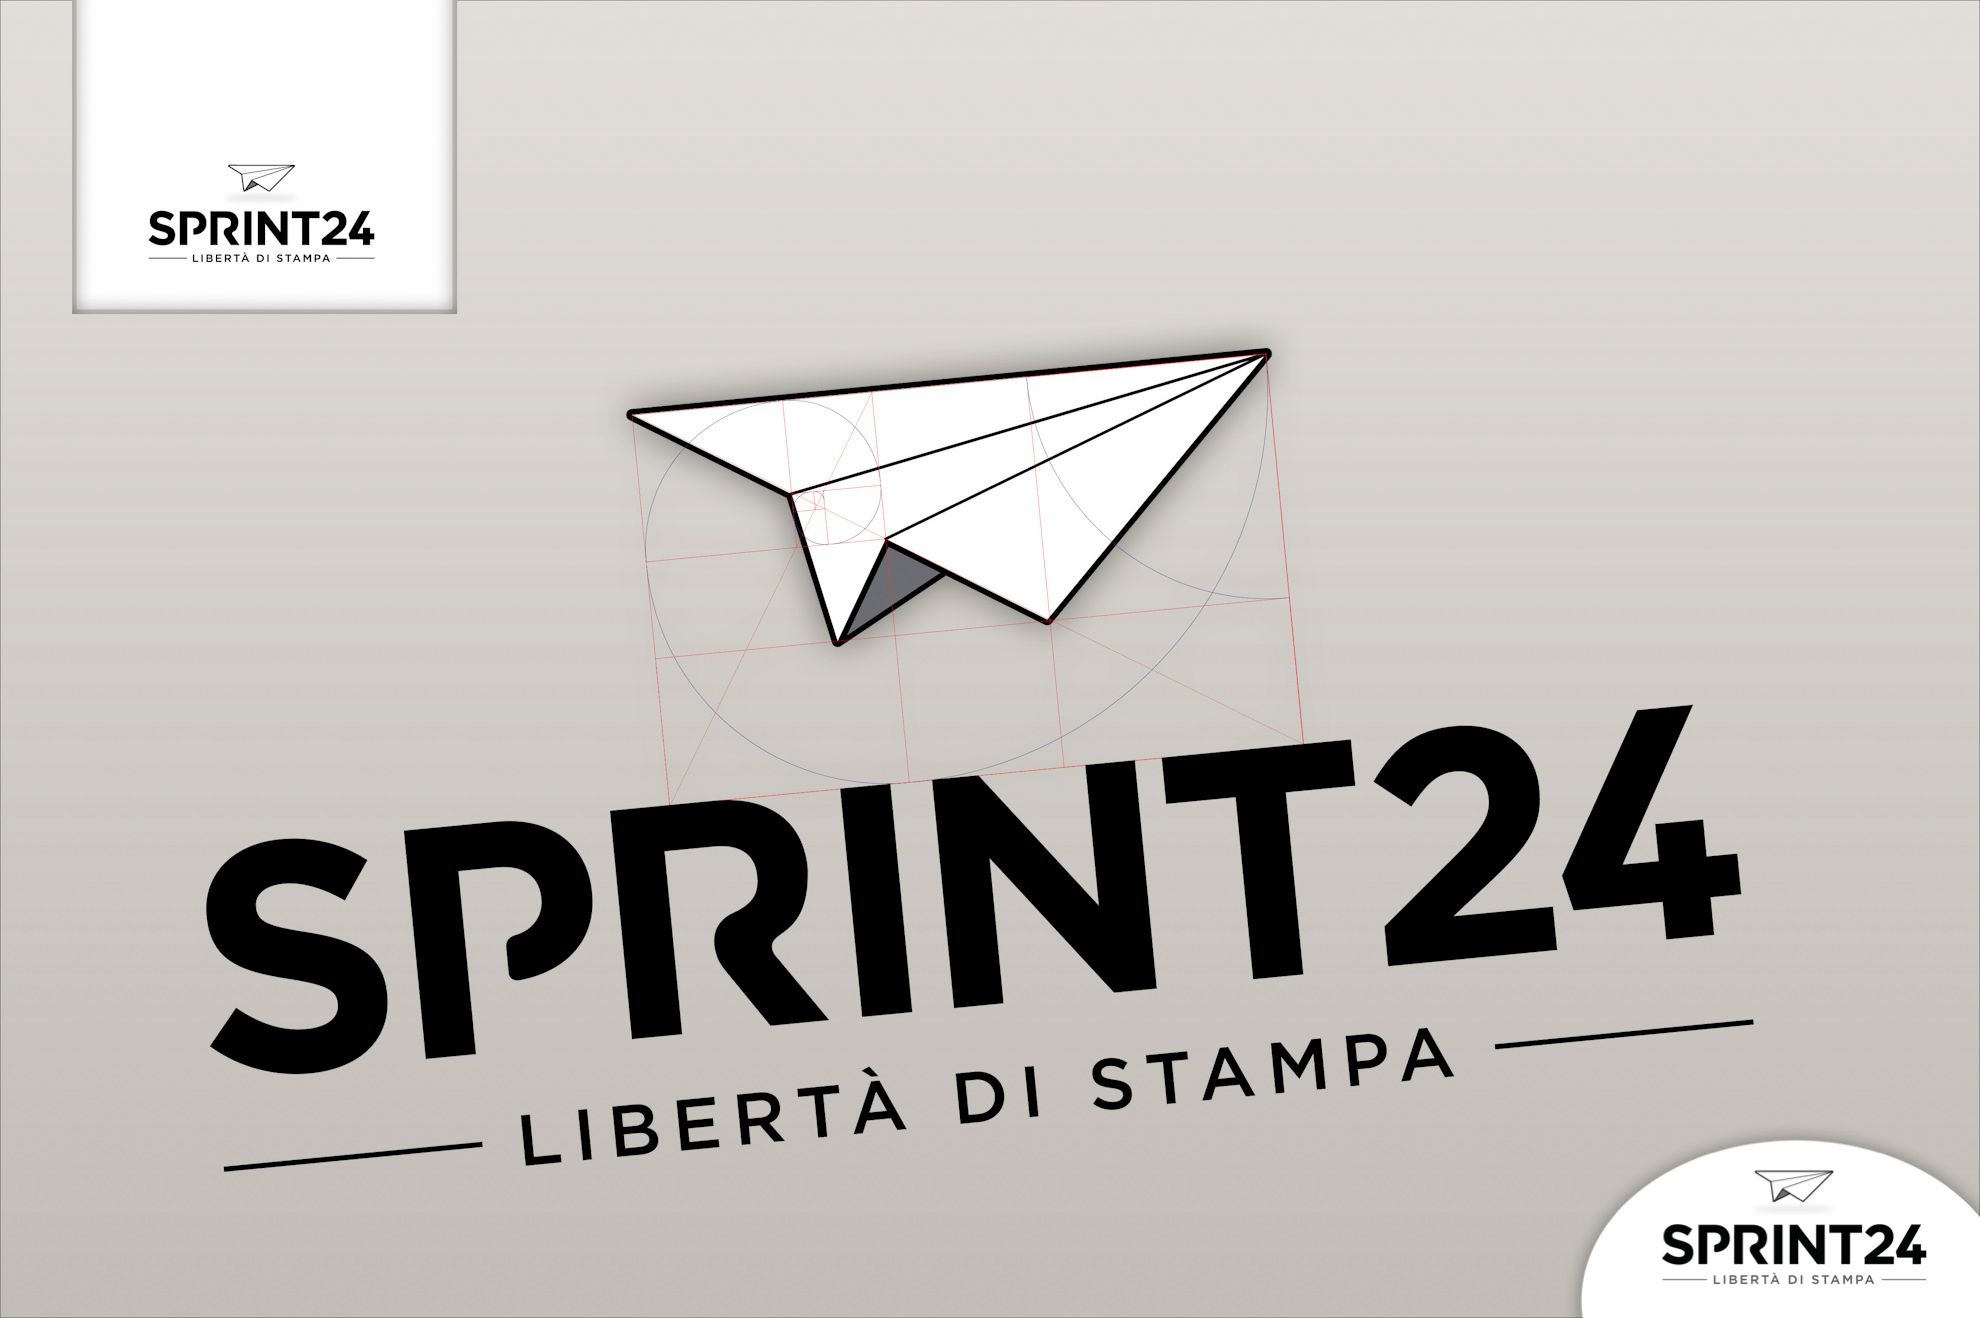 Sprint24 si rinnova: Dopo oltre un anno di lavoro Sprint24.com è lieta di pubblicare la nuova interfaccia.
I numerosi miglioramenti non si fermano solo al layout grafico …